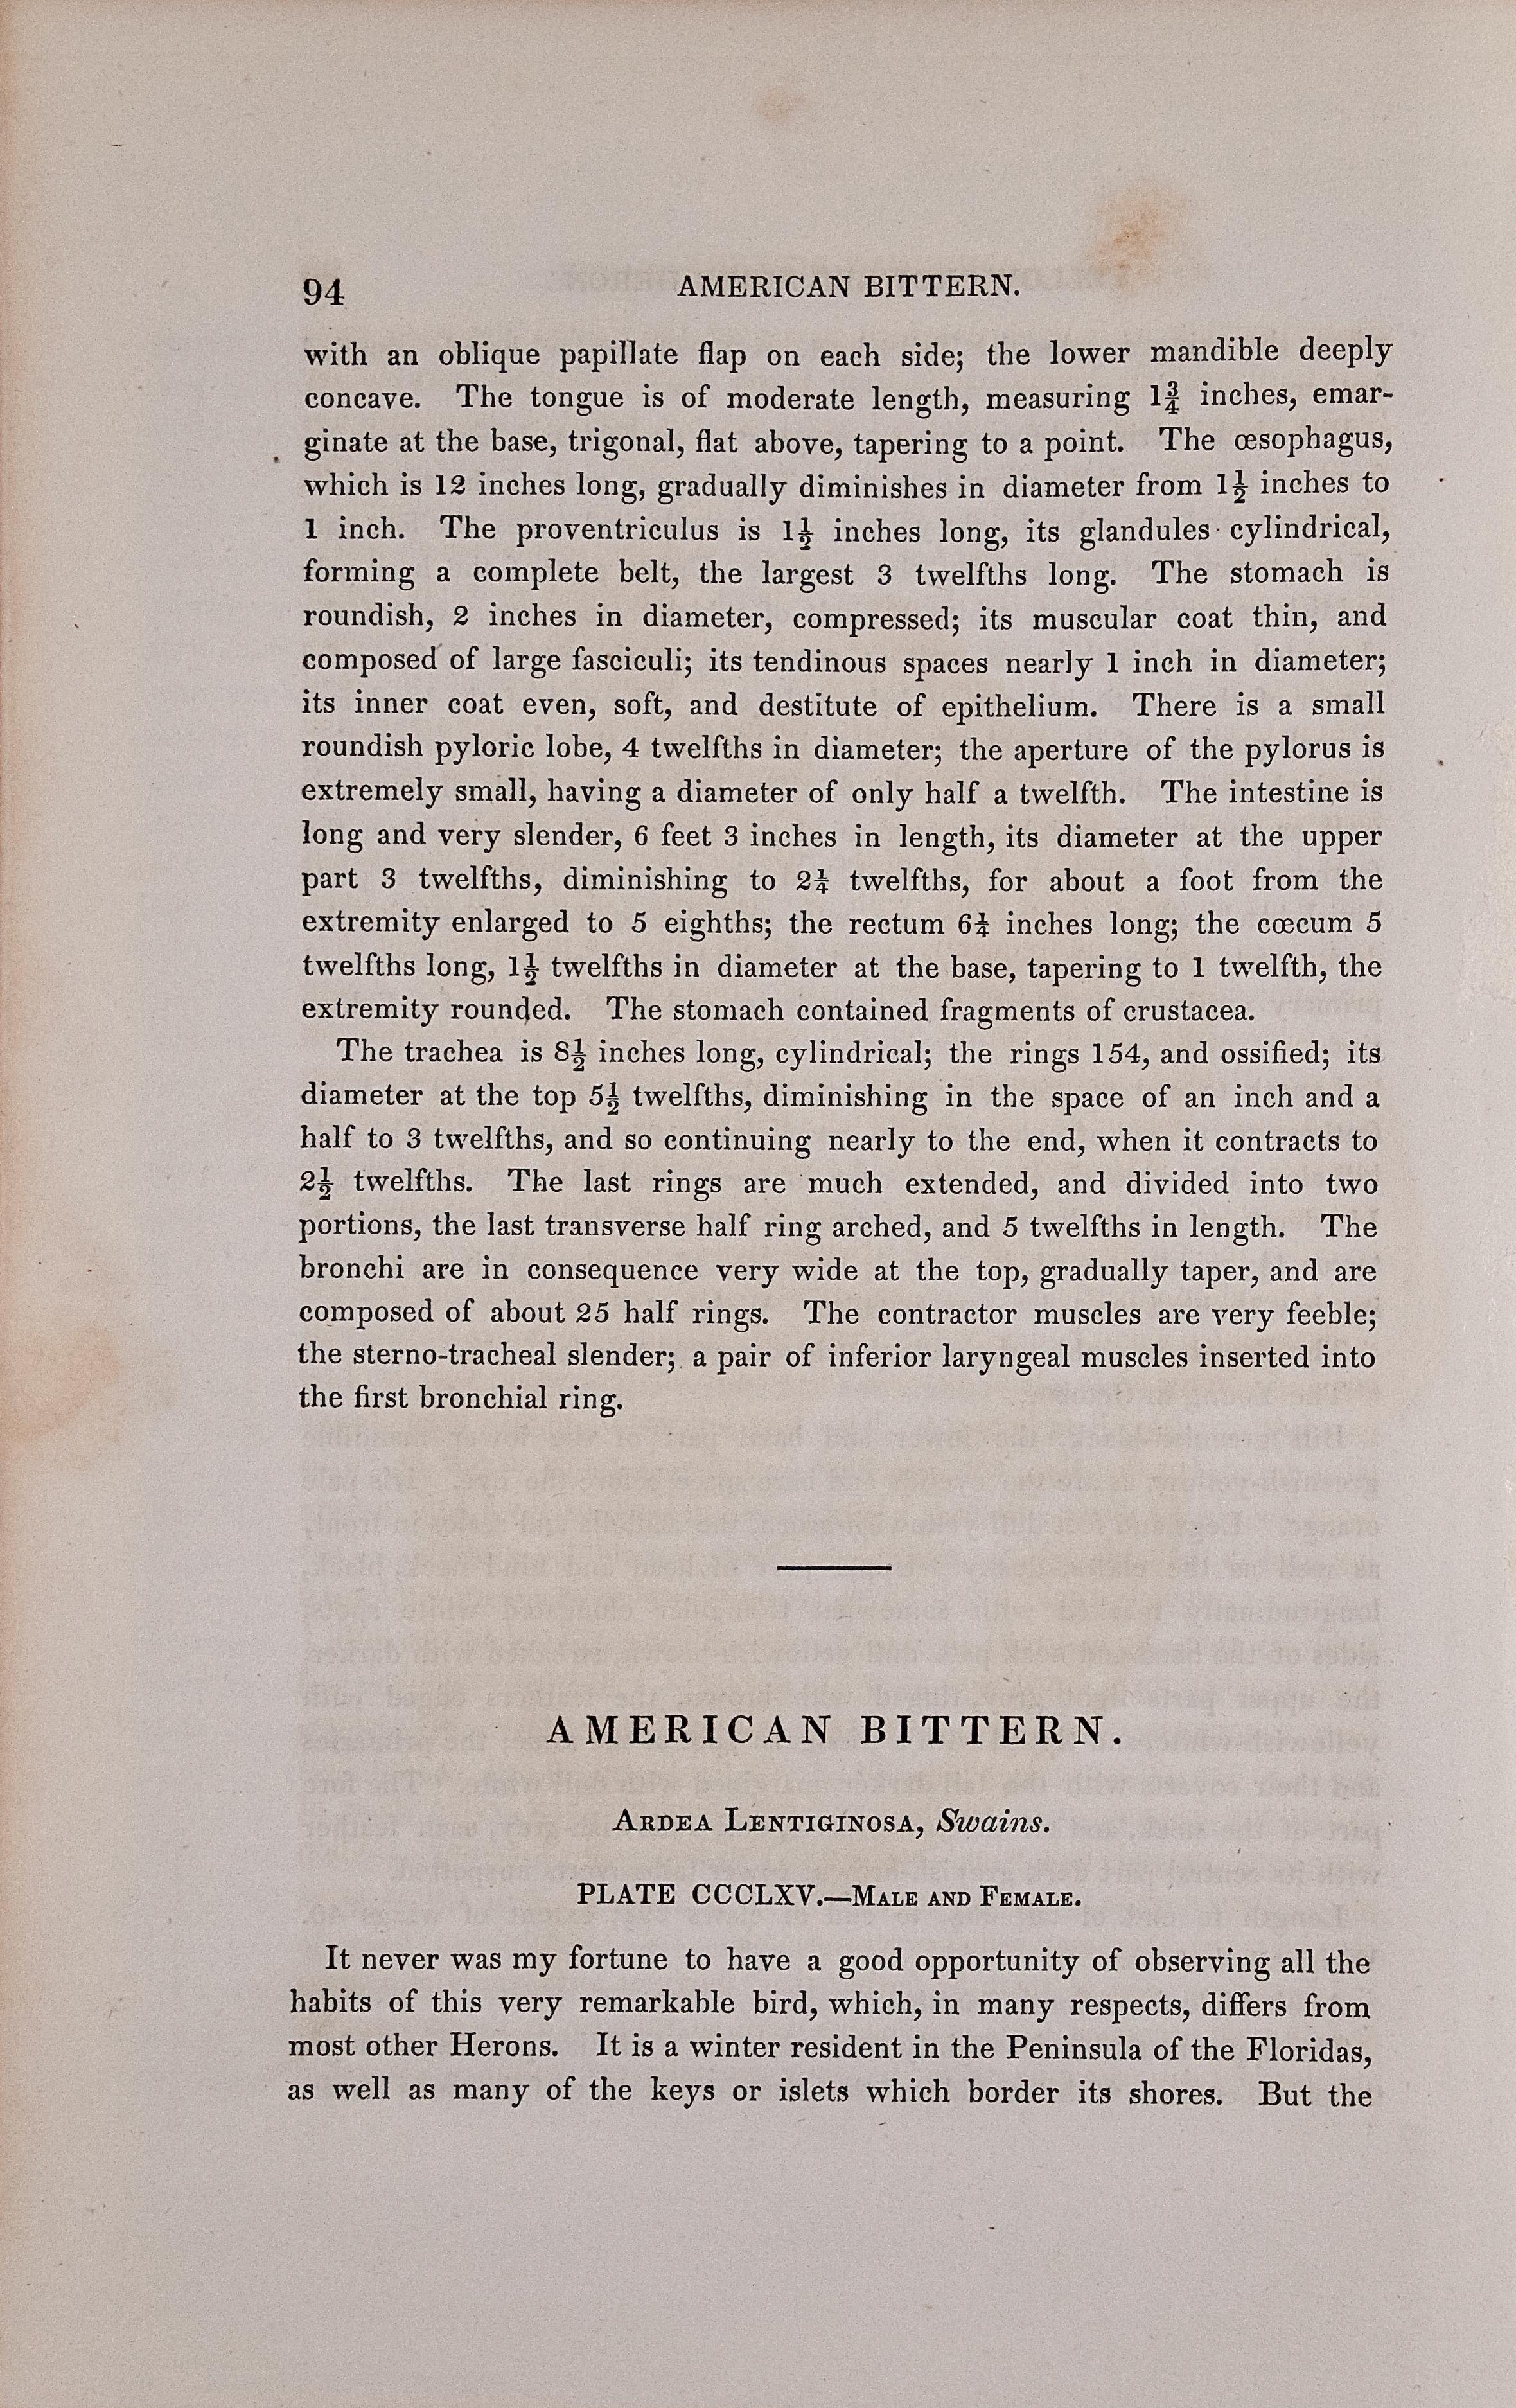 Dies ist ein Original 19. Jahrhundert 1. octavo Ausgabe John James Audubon handkolorierte Lithographie mit dem Titel 